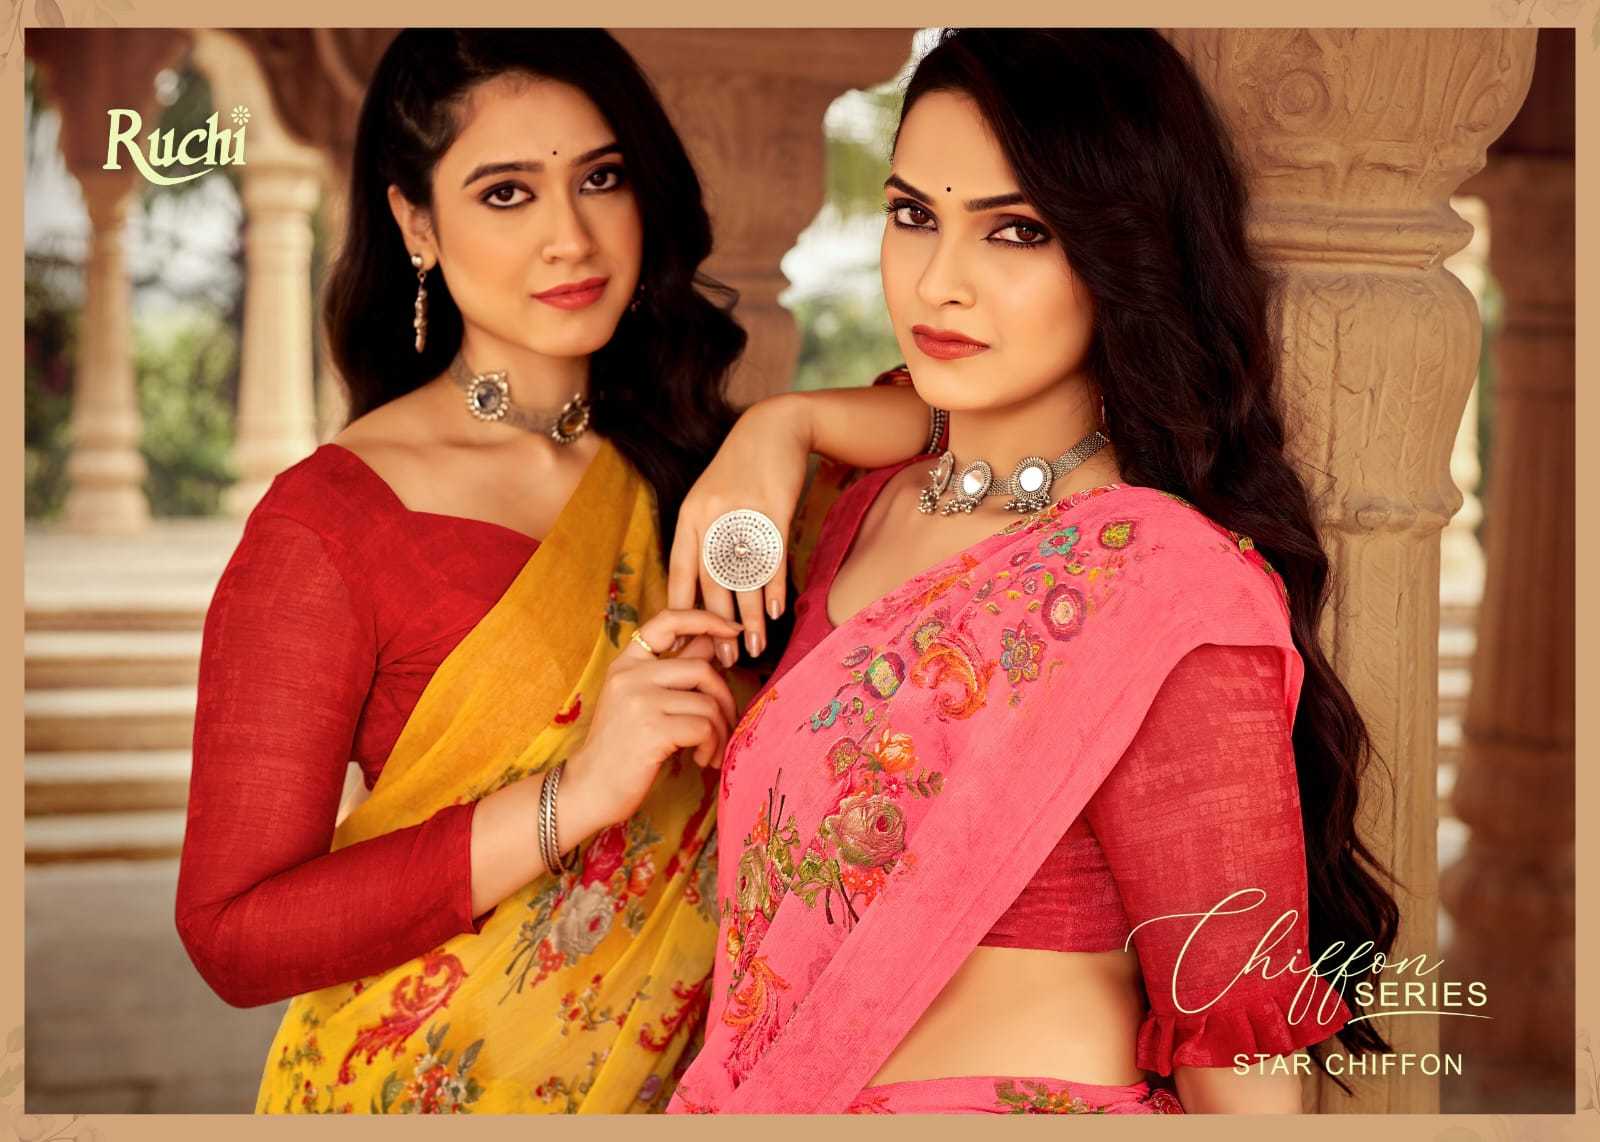 ruchi star chiffon vol 152 regular wear beautiful chiffon saree at best rate